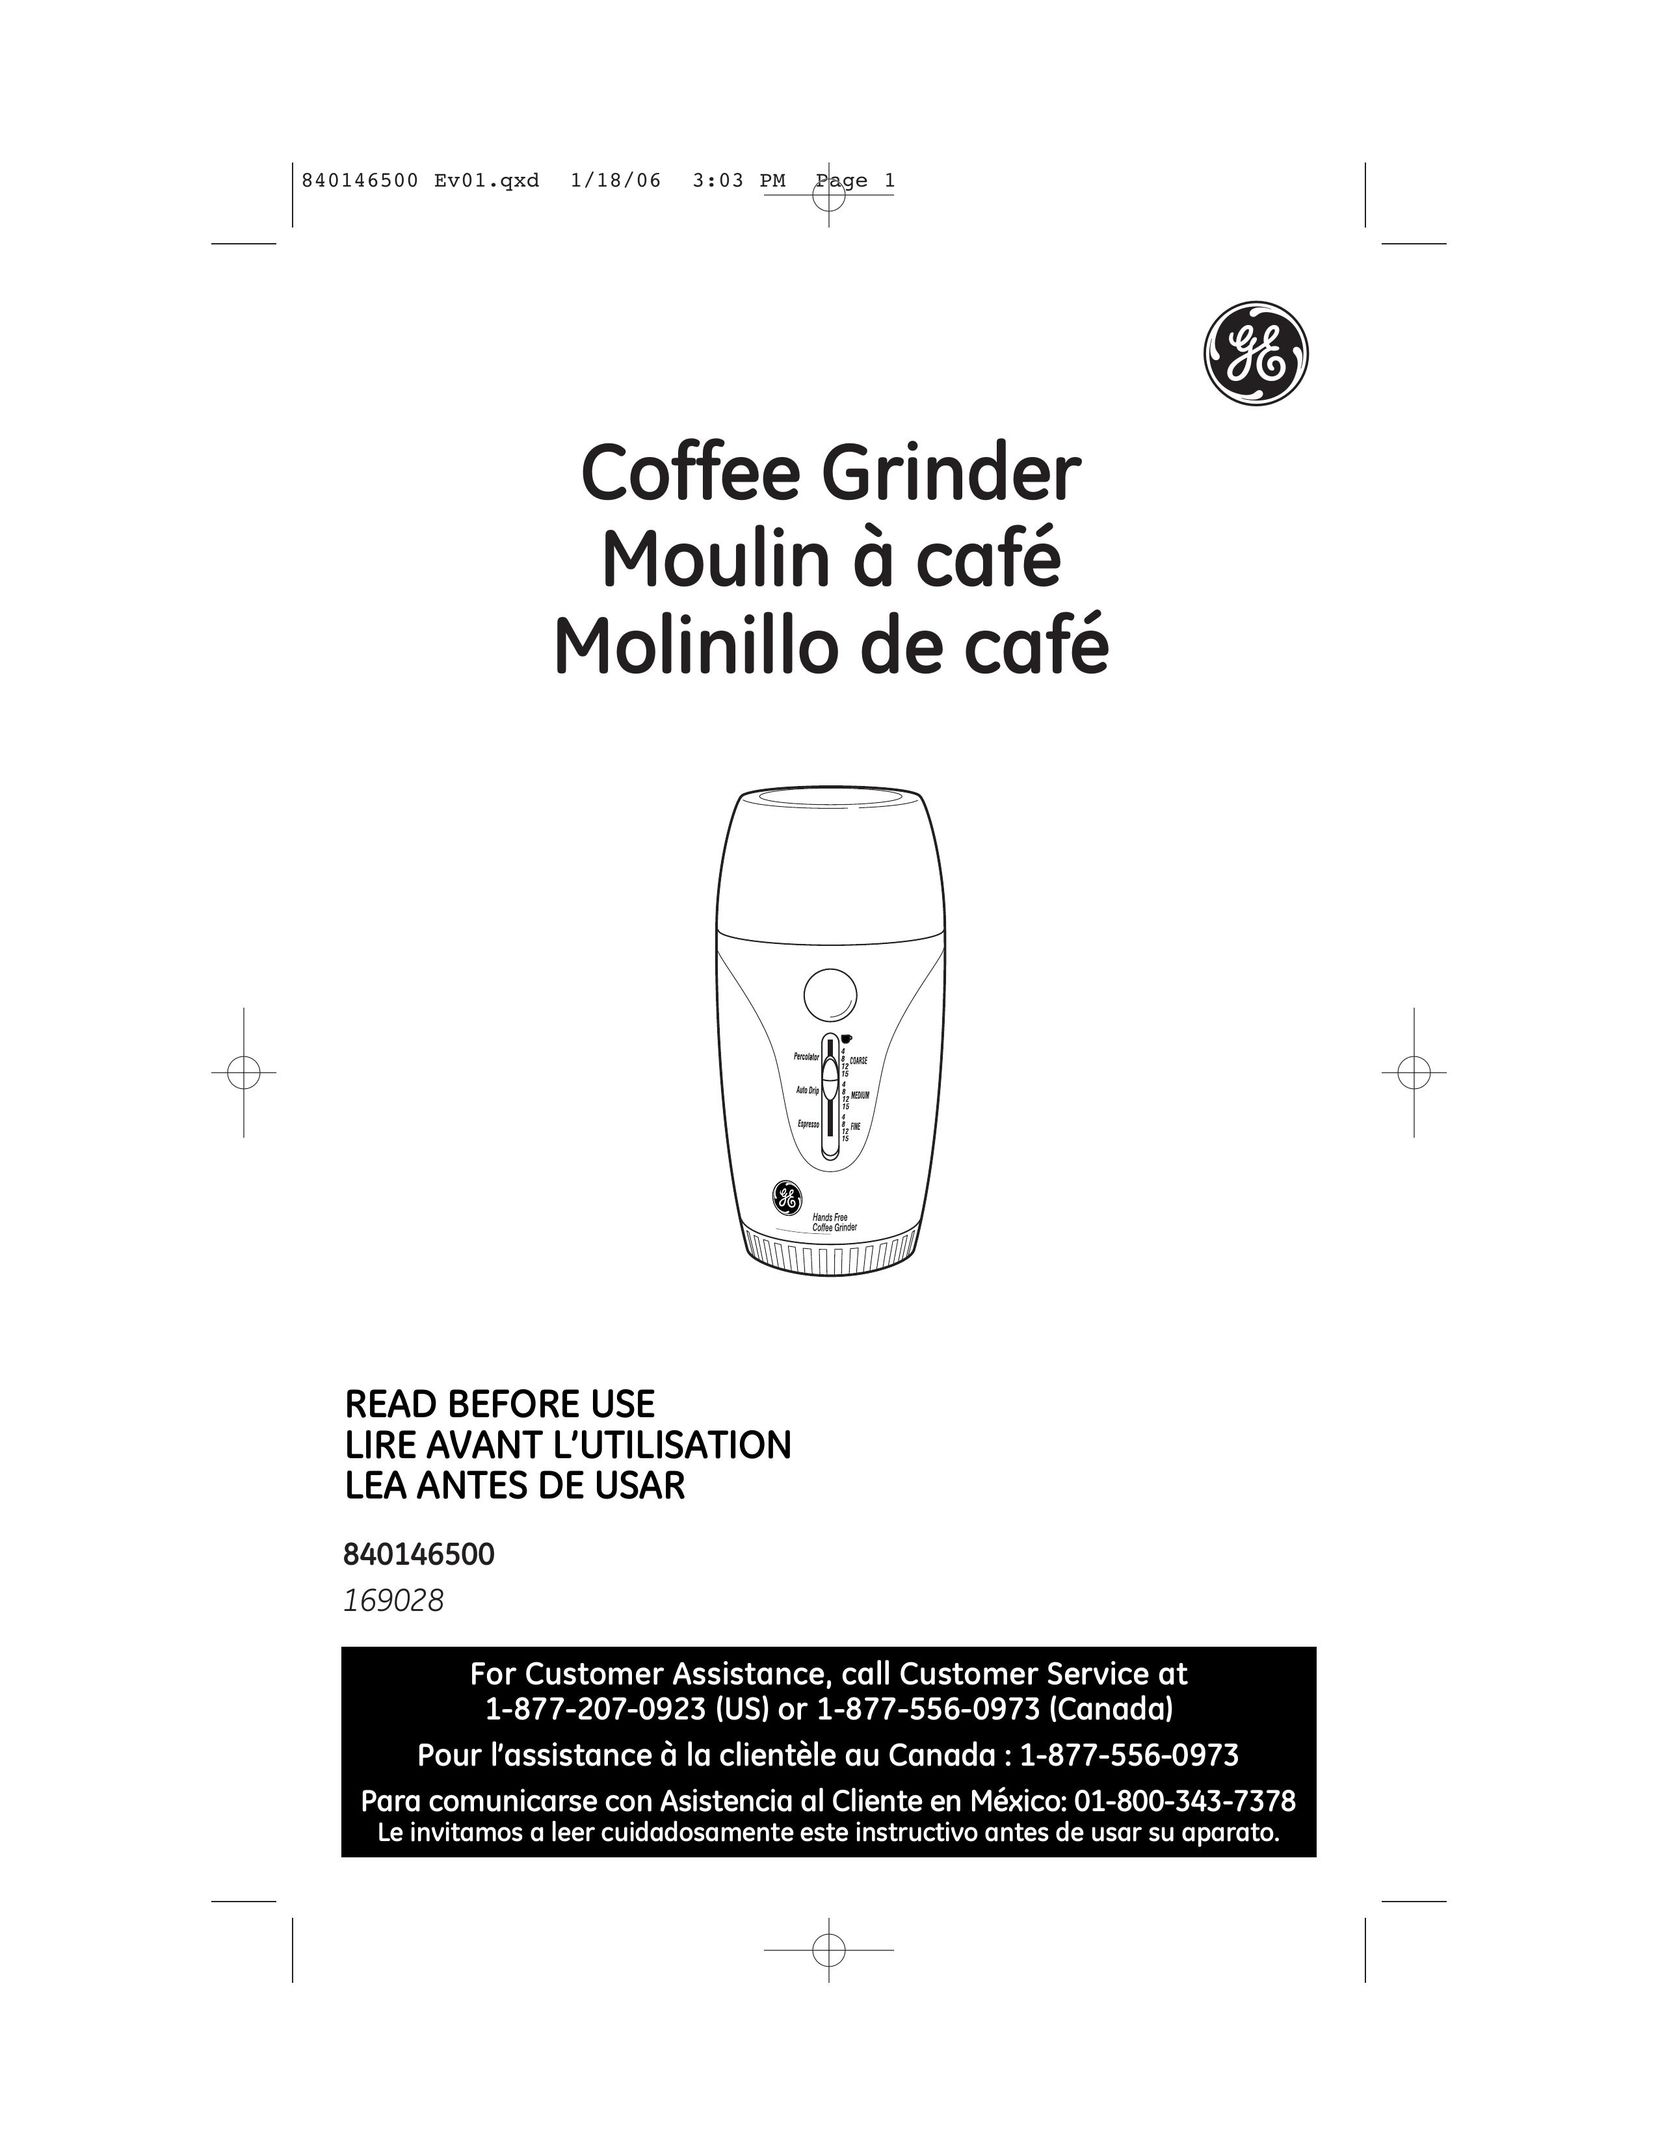 GE 840146500 Coffee Grinder User Manual